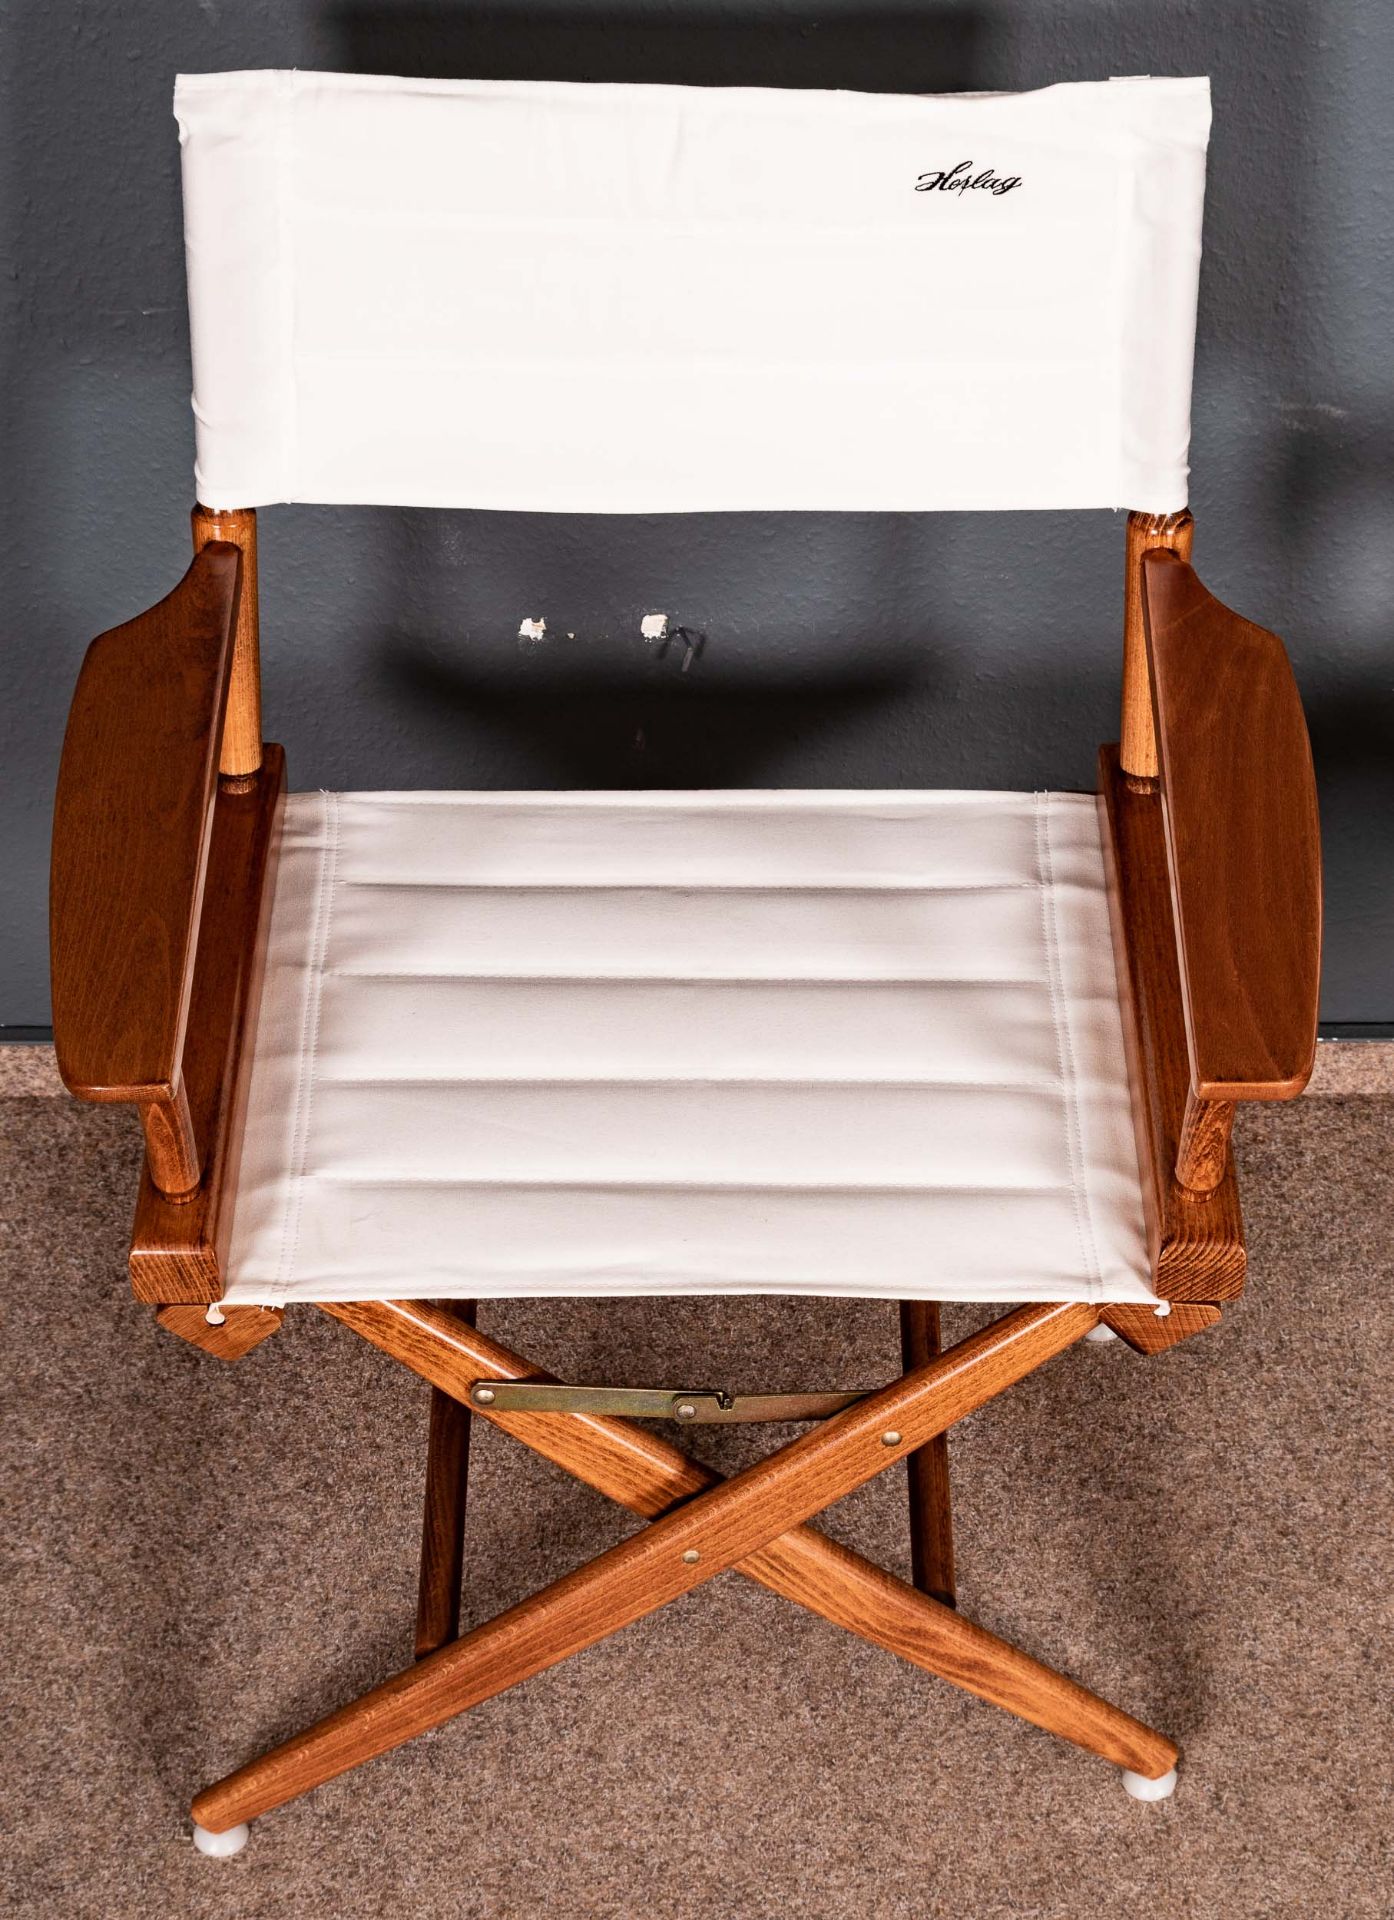 Paar Regiestühle der Marke "Herlag", letztes Viertel 20. Jhdt., nussbaumfarbig gebeiztes und lackie - Bild 4 aus 9